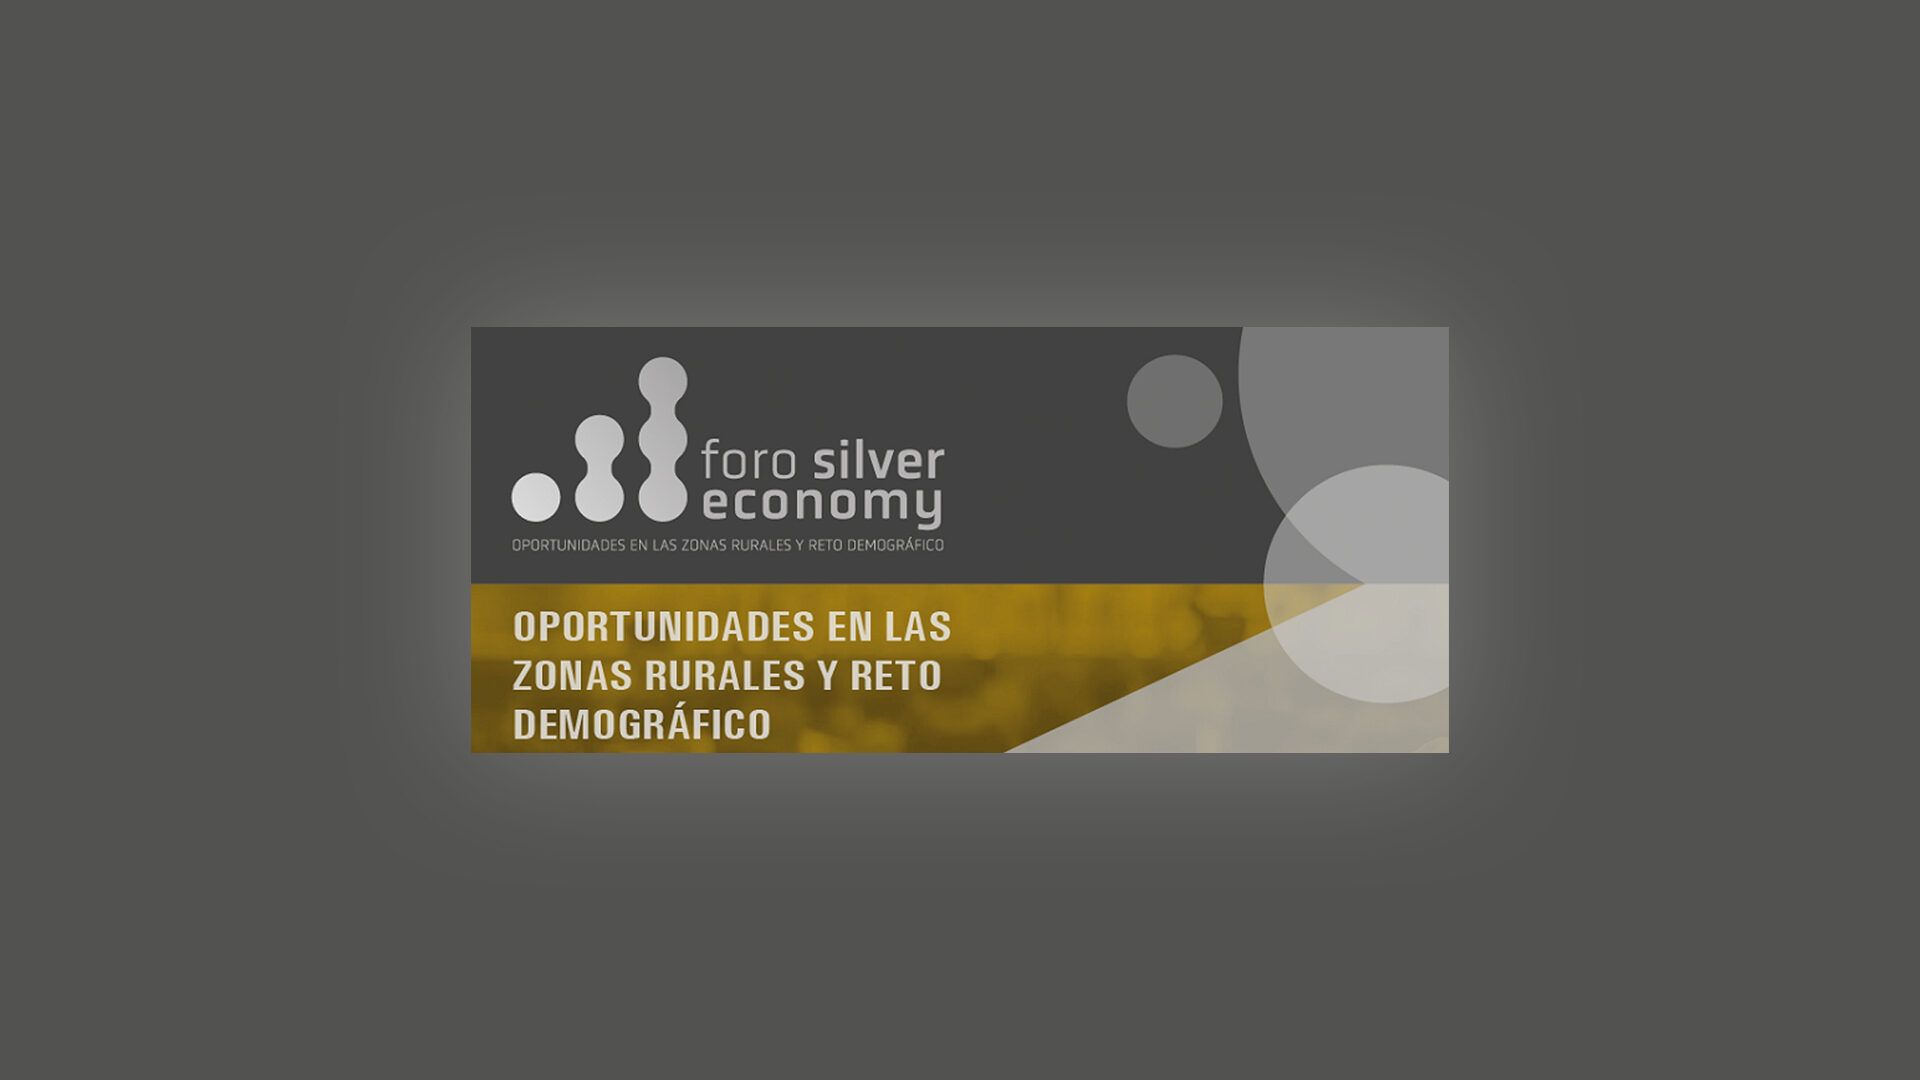 Ne foro silver economy 1920x1080